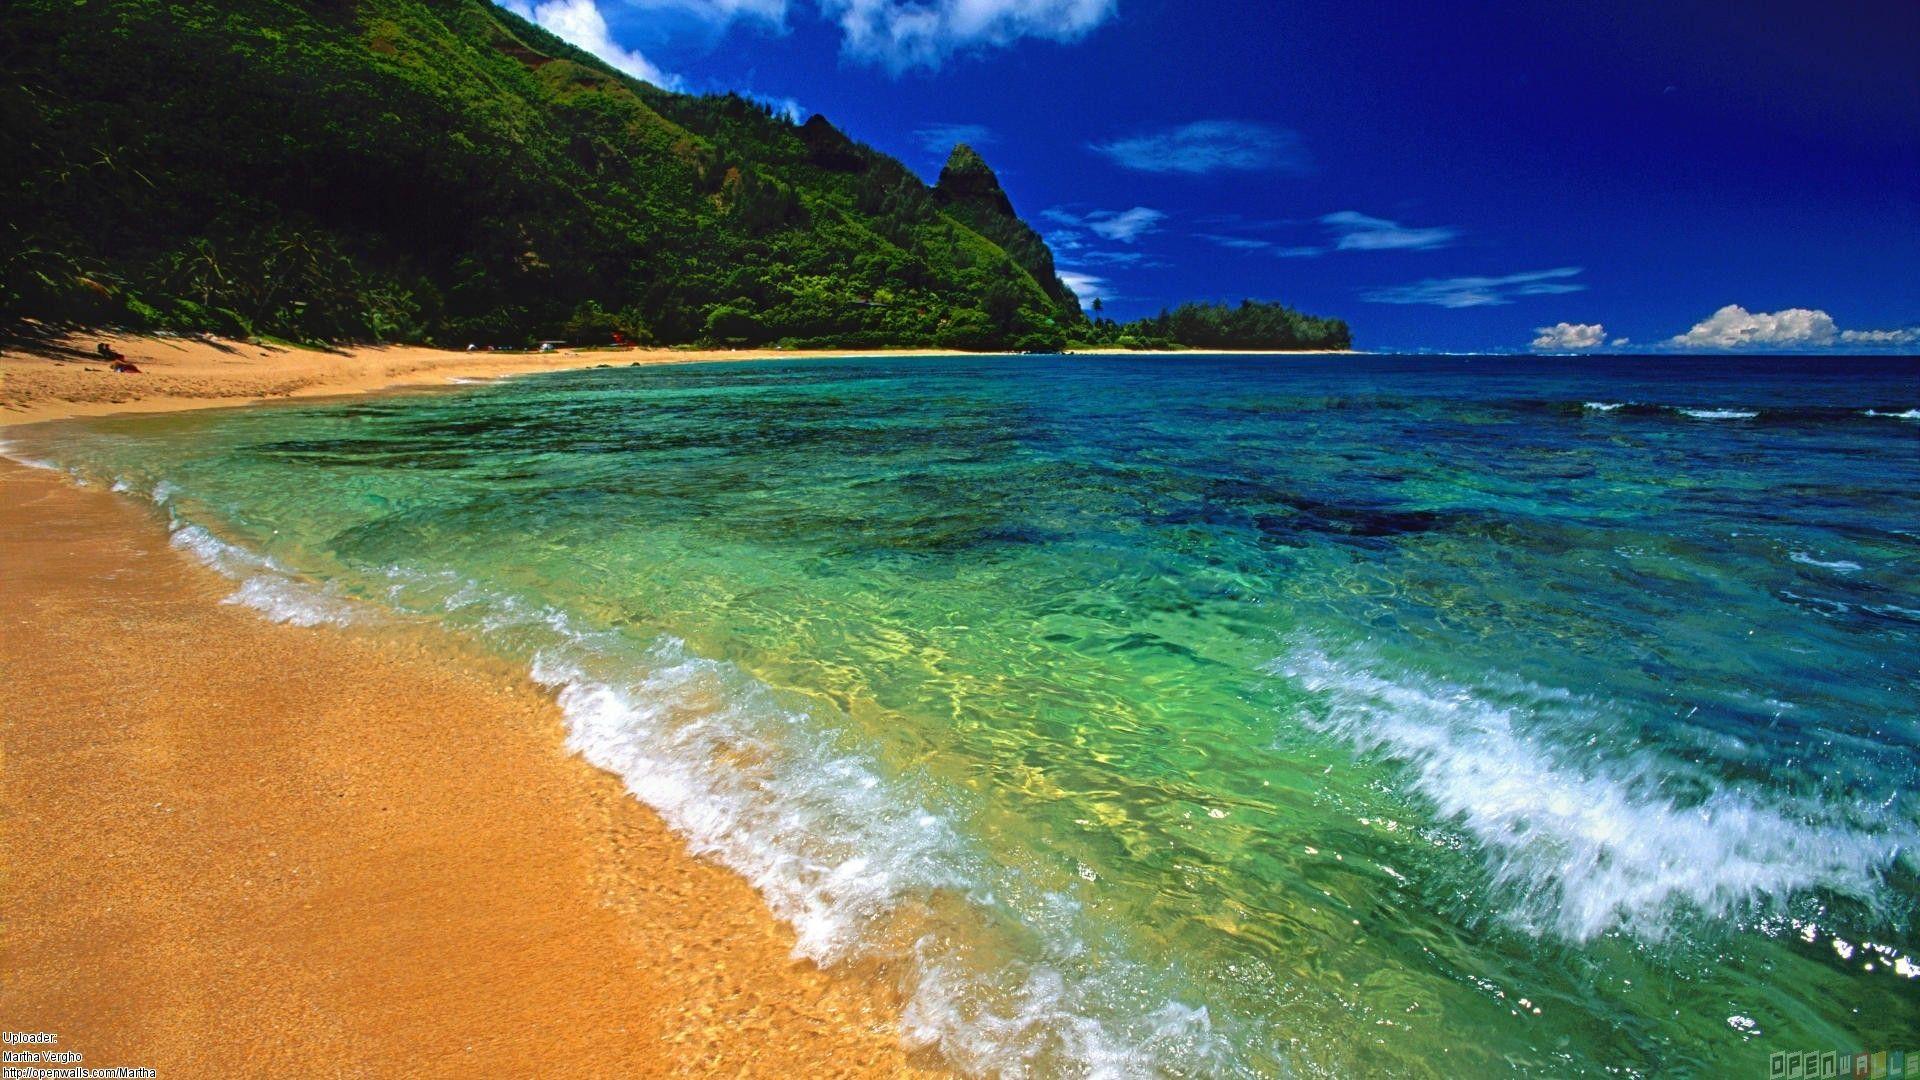 Hawaii Islands Names